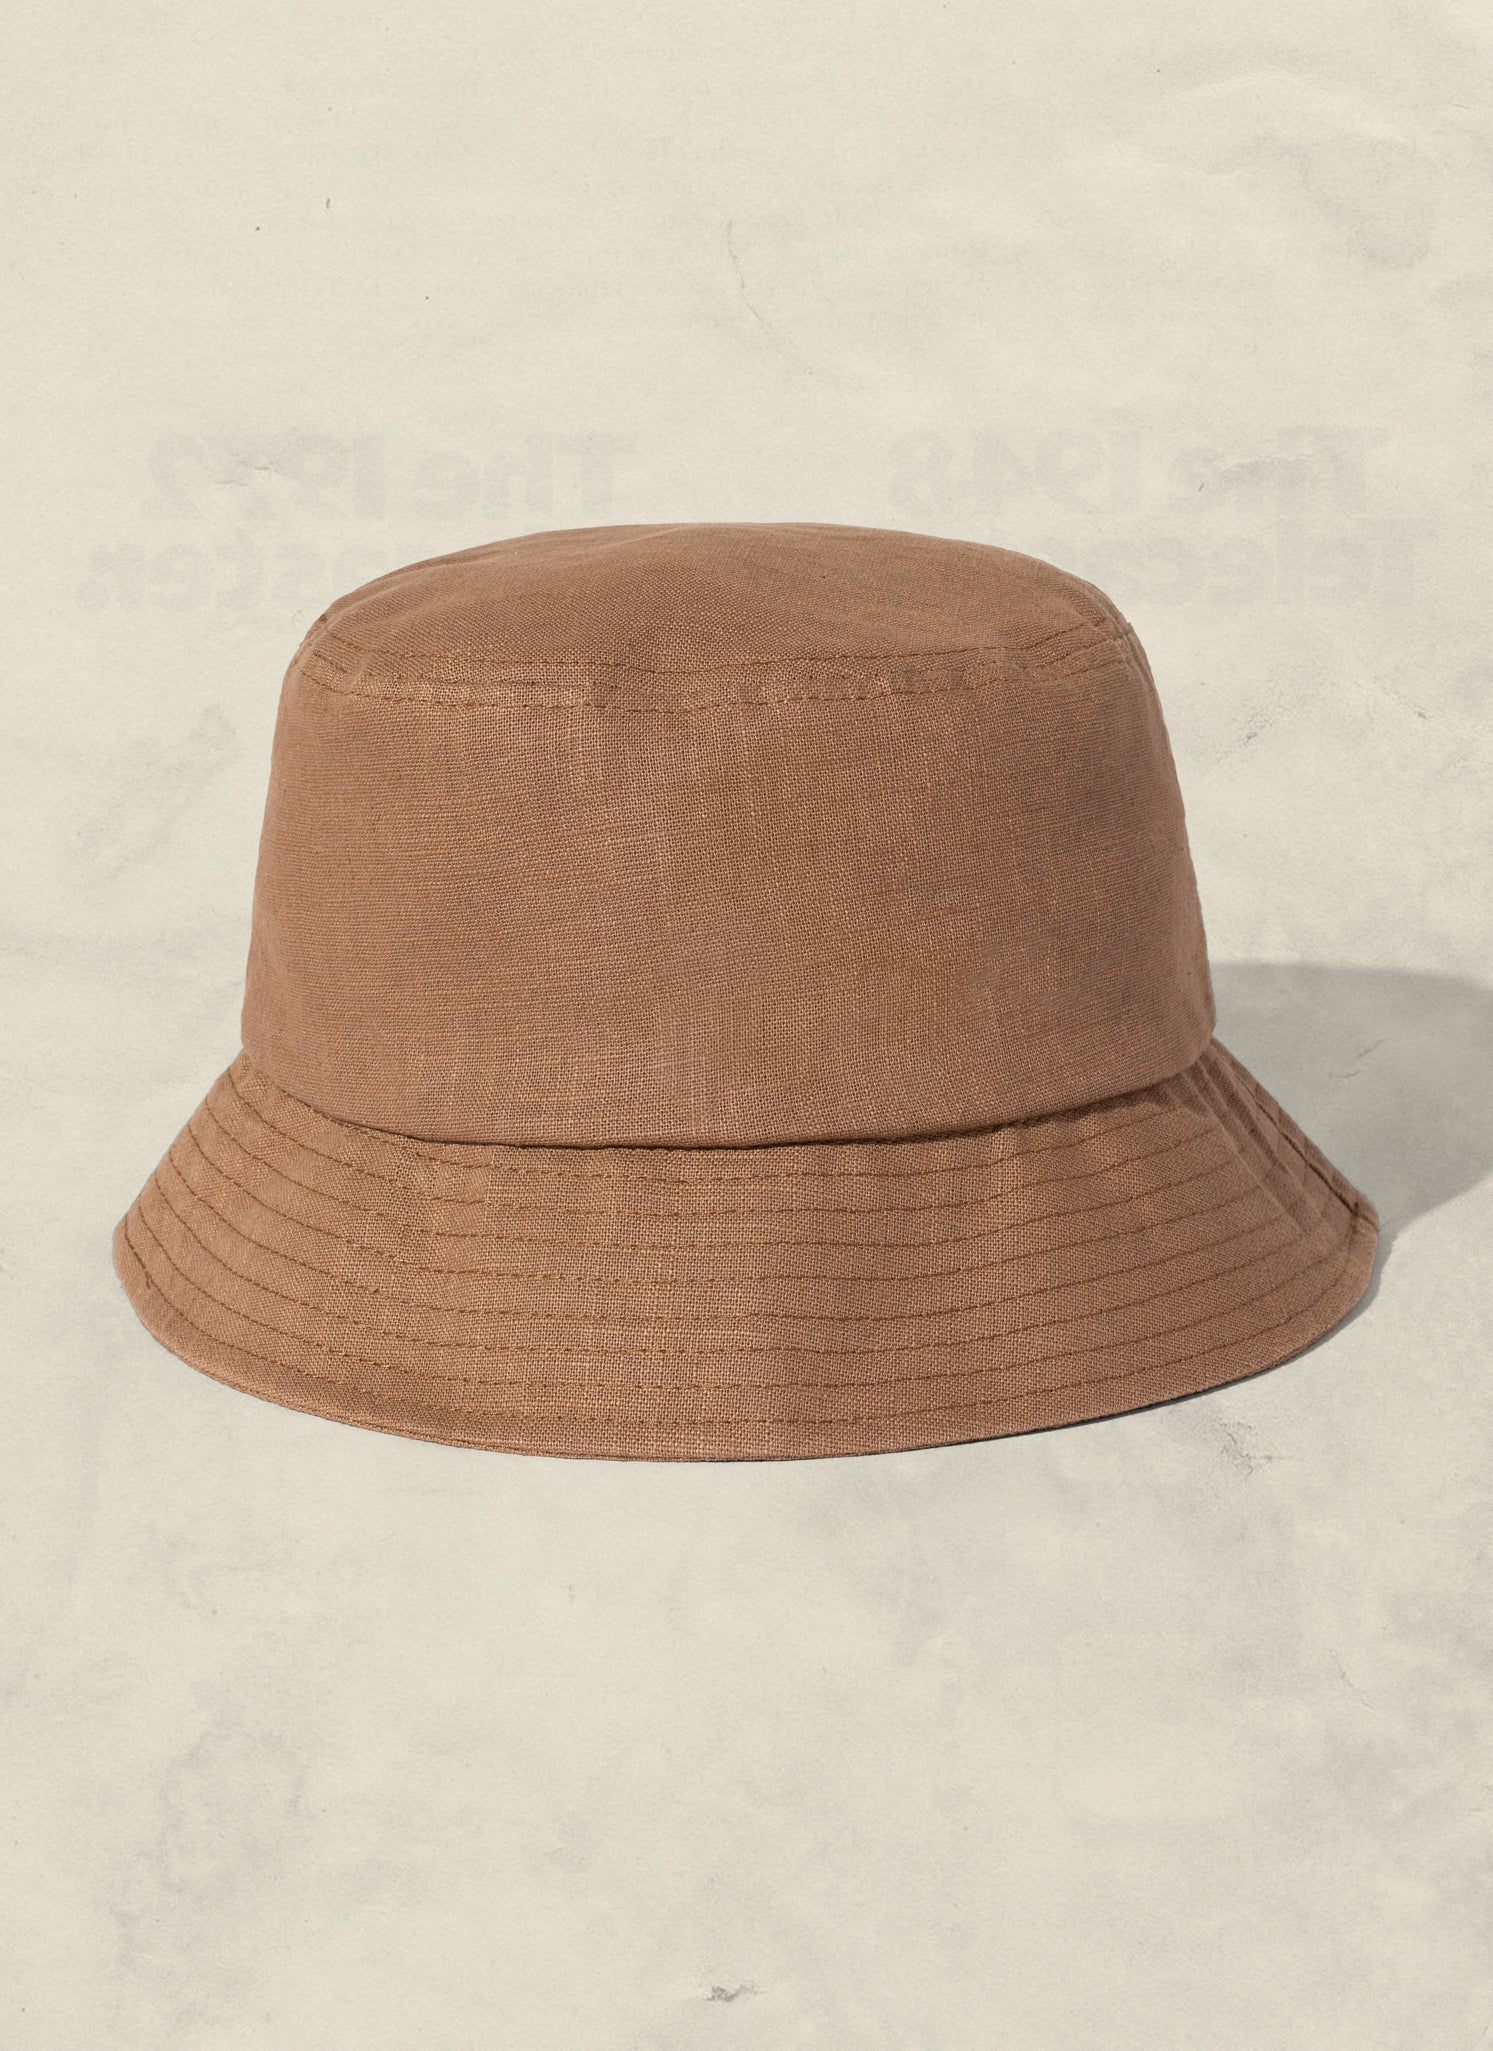 Weld Mfg Hemp Bucket Hat - Vintage Inspired Beach Sun Hat - Light Brown